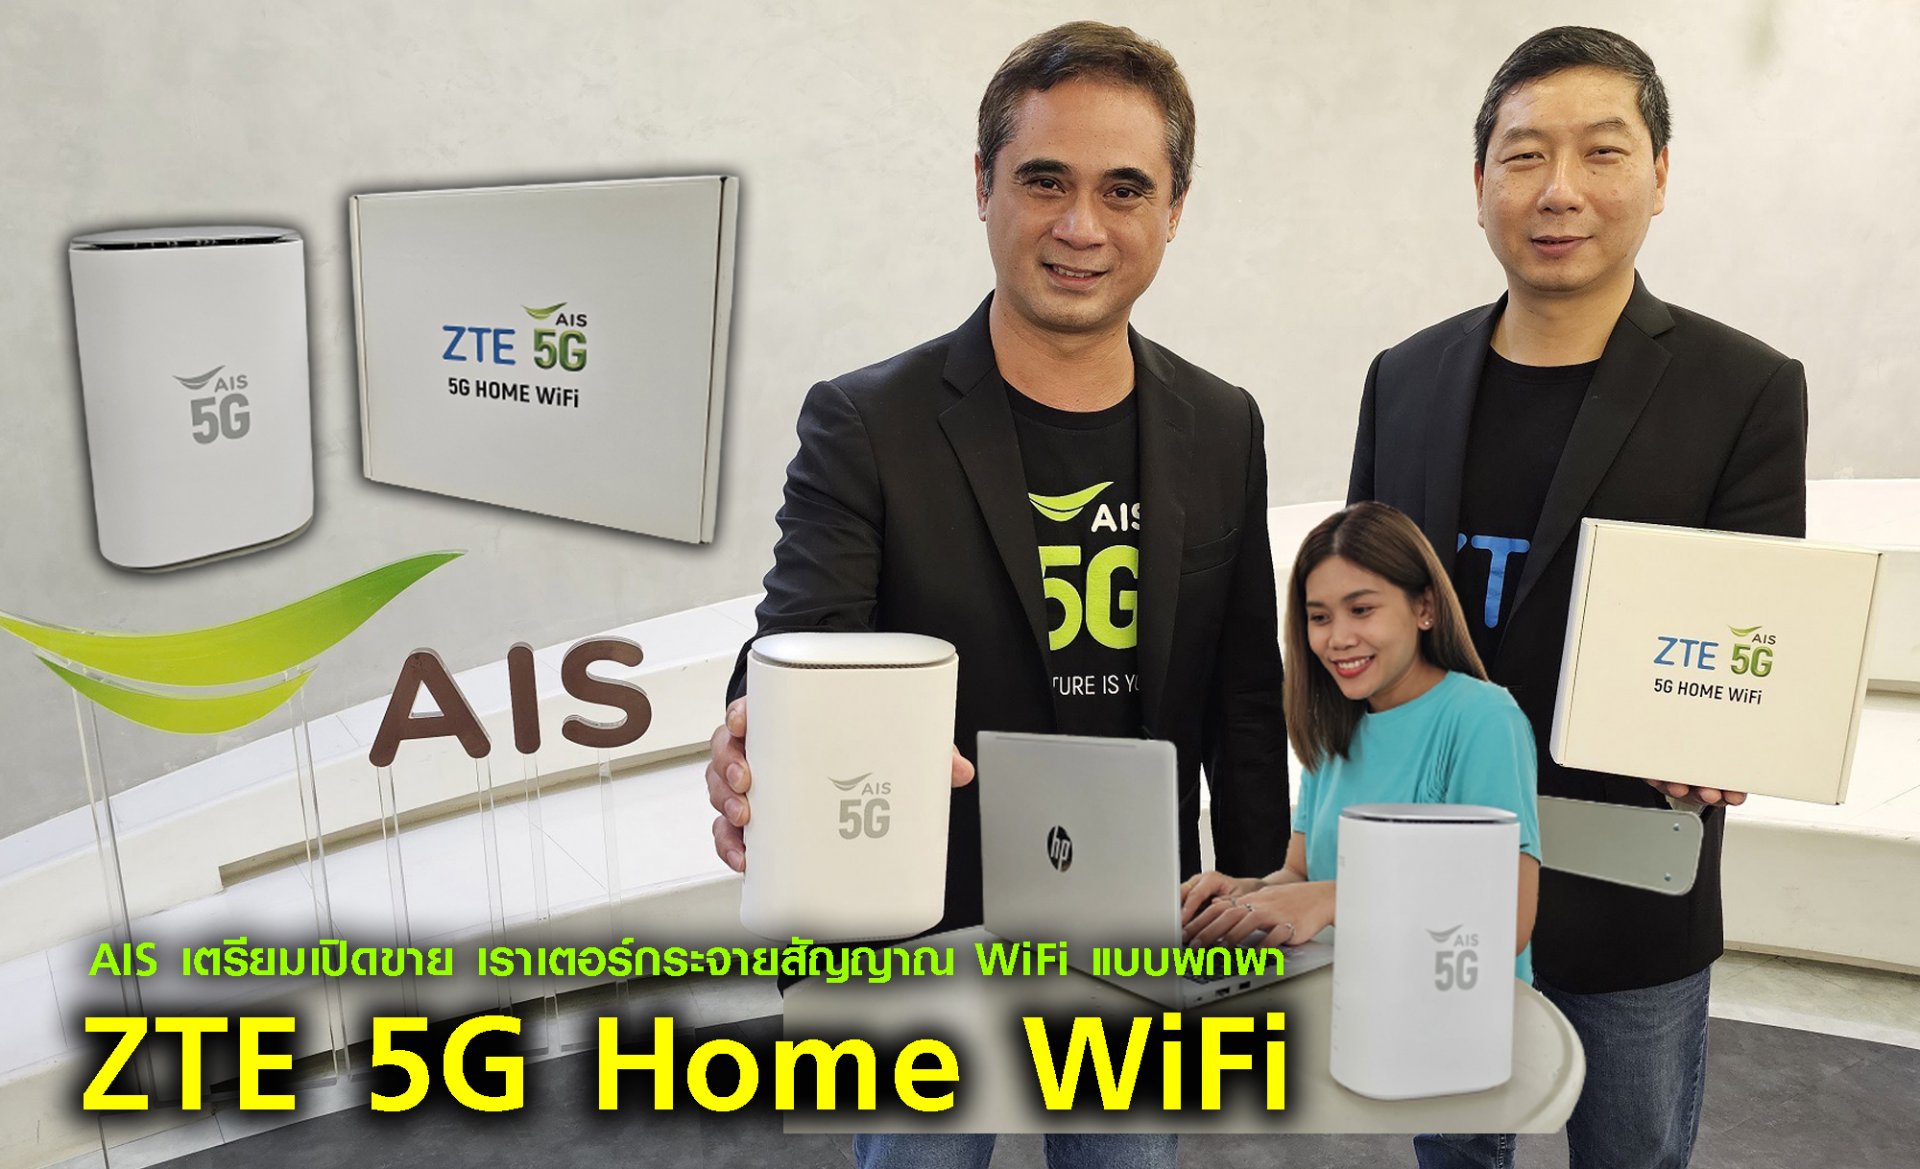 AIS เอาใจลูกค้าสาย Gadget ส่งไอเท็ม 5G ดีไวซ์สุดฮิต เราเตอร์กระจายสัญญาณ WiFi แบบพกพา กลับมาตามคำเรียกร้อง กับ “ZTE 5G Home WiFi” ตอกย้ำผู้ให้บริการที่พร้อมส่งมอบประสบการณ์ดิจิทัลแบบไร้ขีดจำกัด